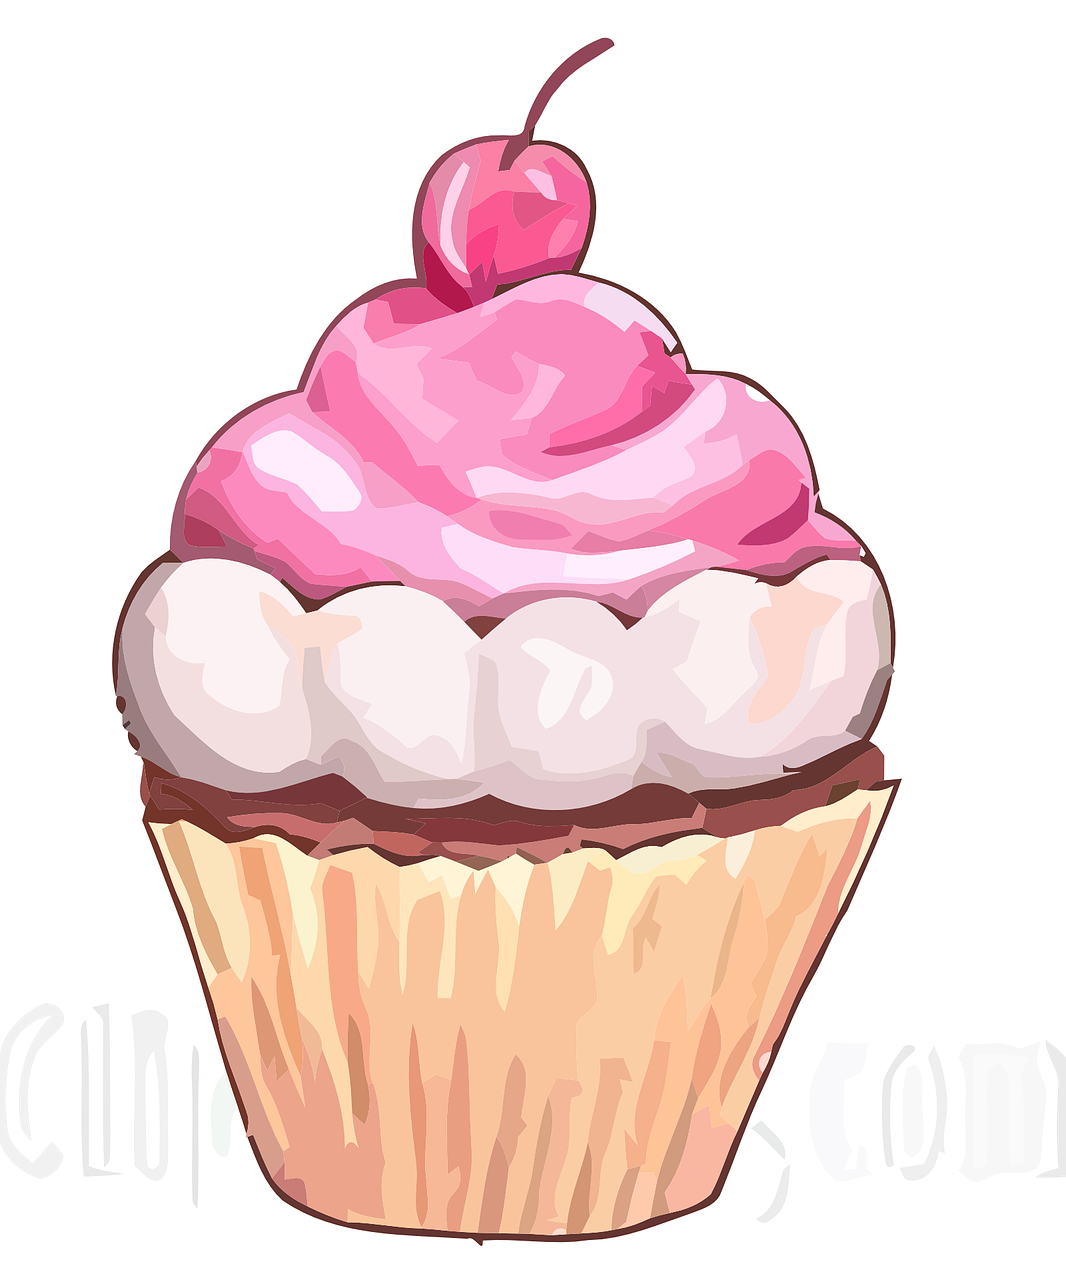 cupcake icing sweet free photo